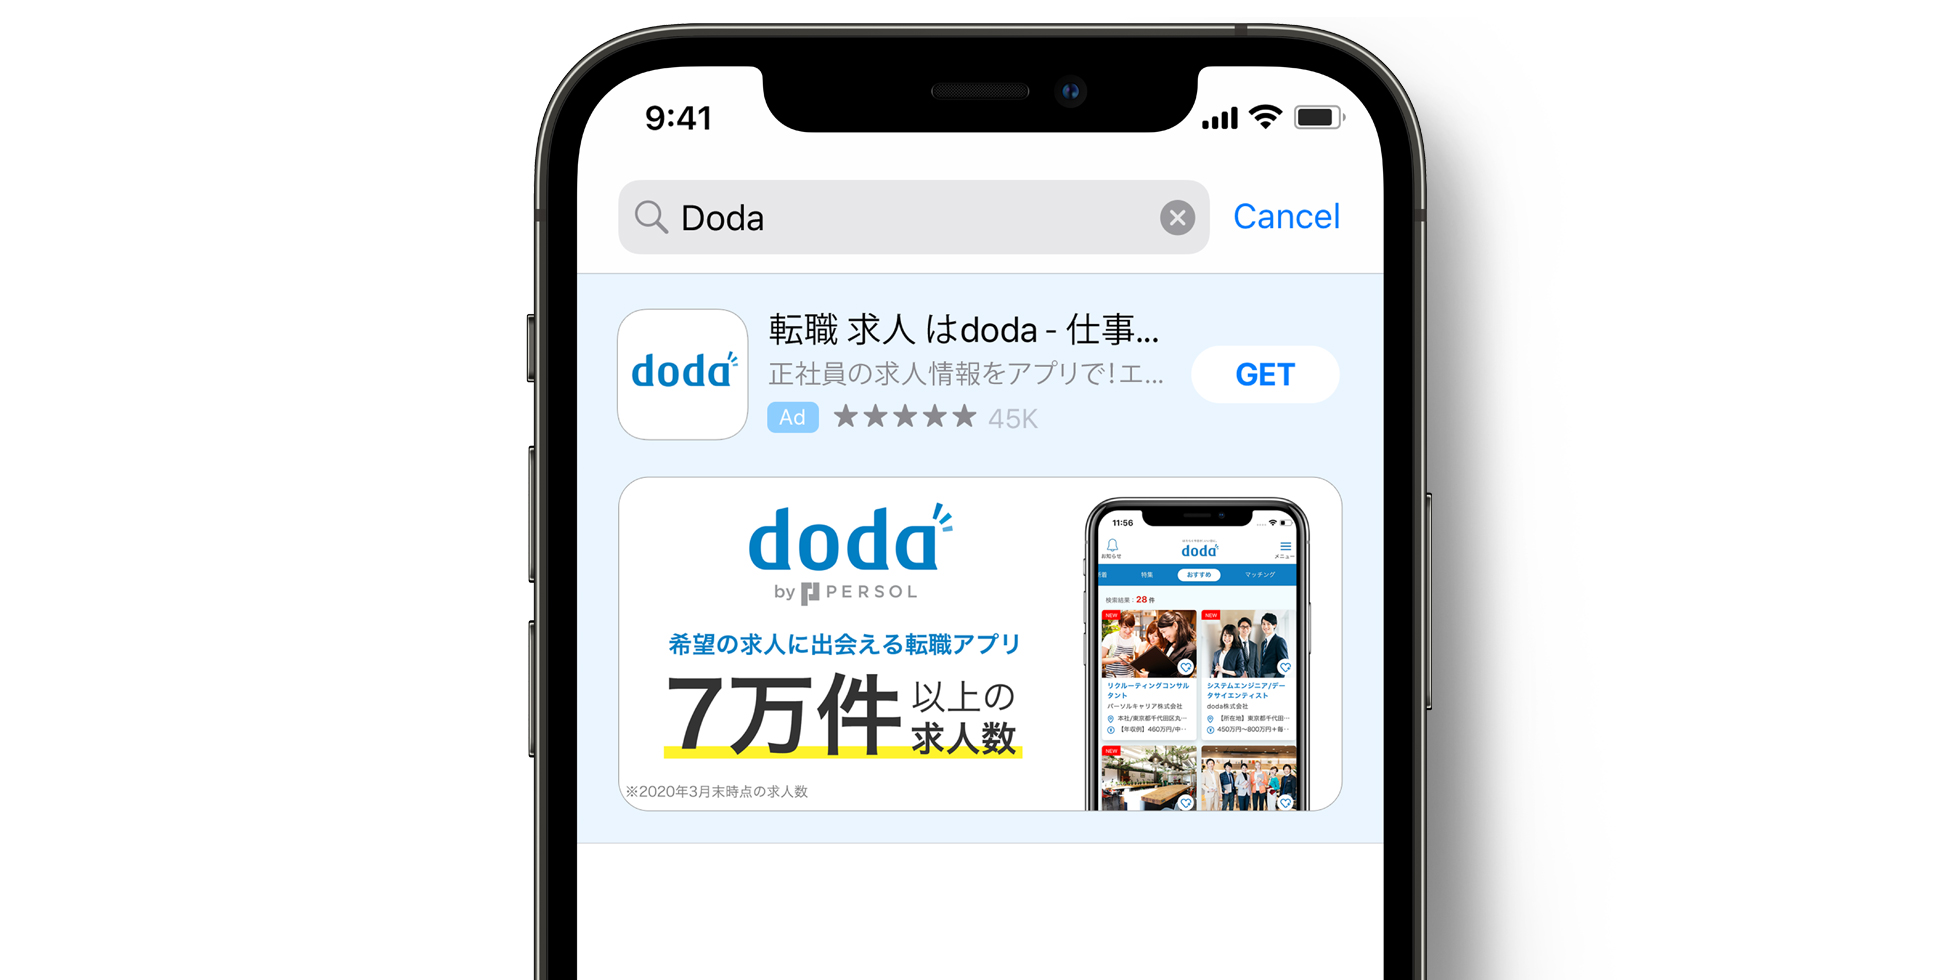 App Store 上的 doda 广告